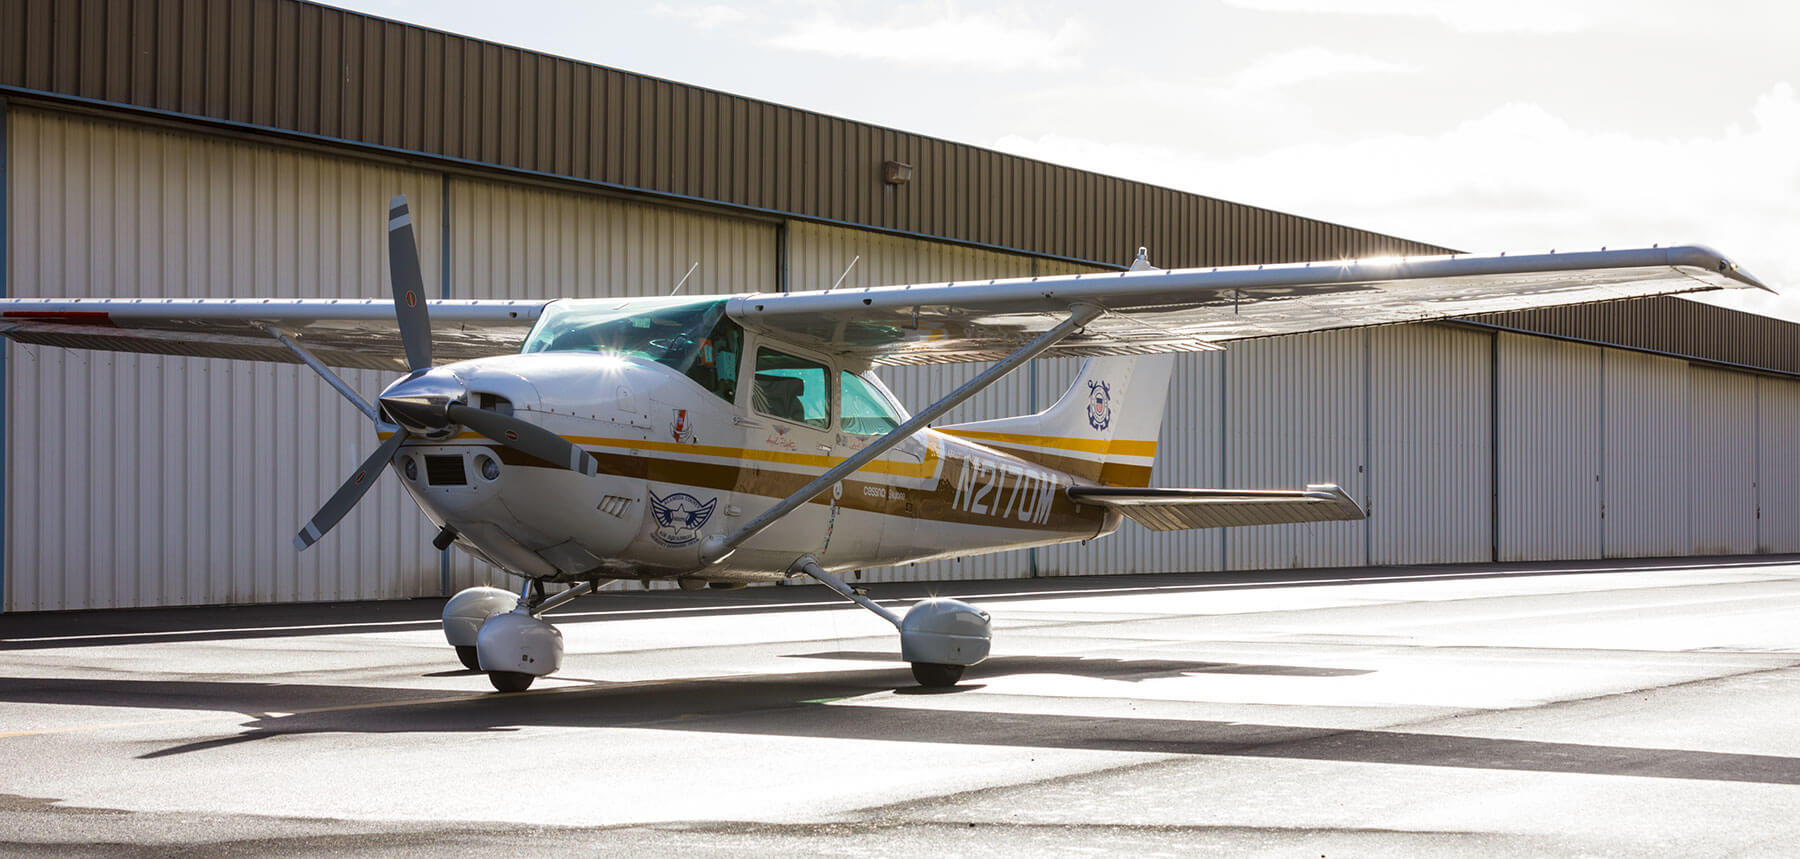 Robert Tucknott's Cessna 182